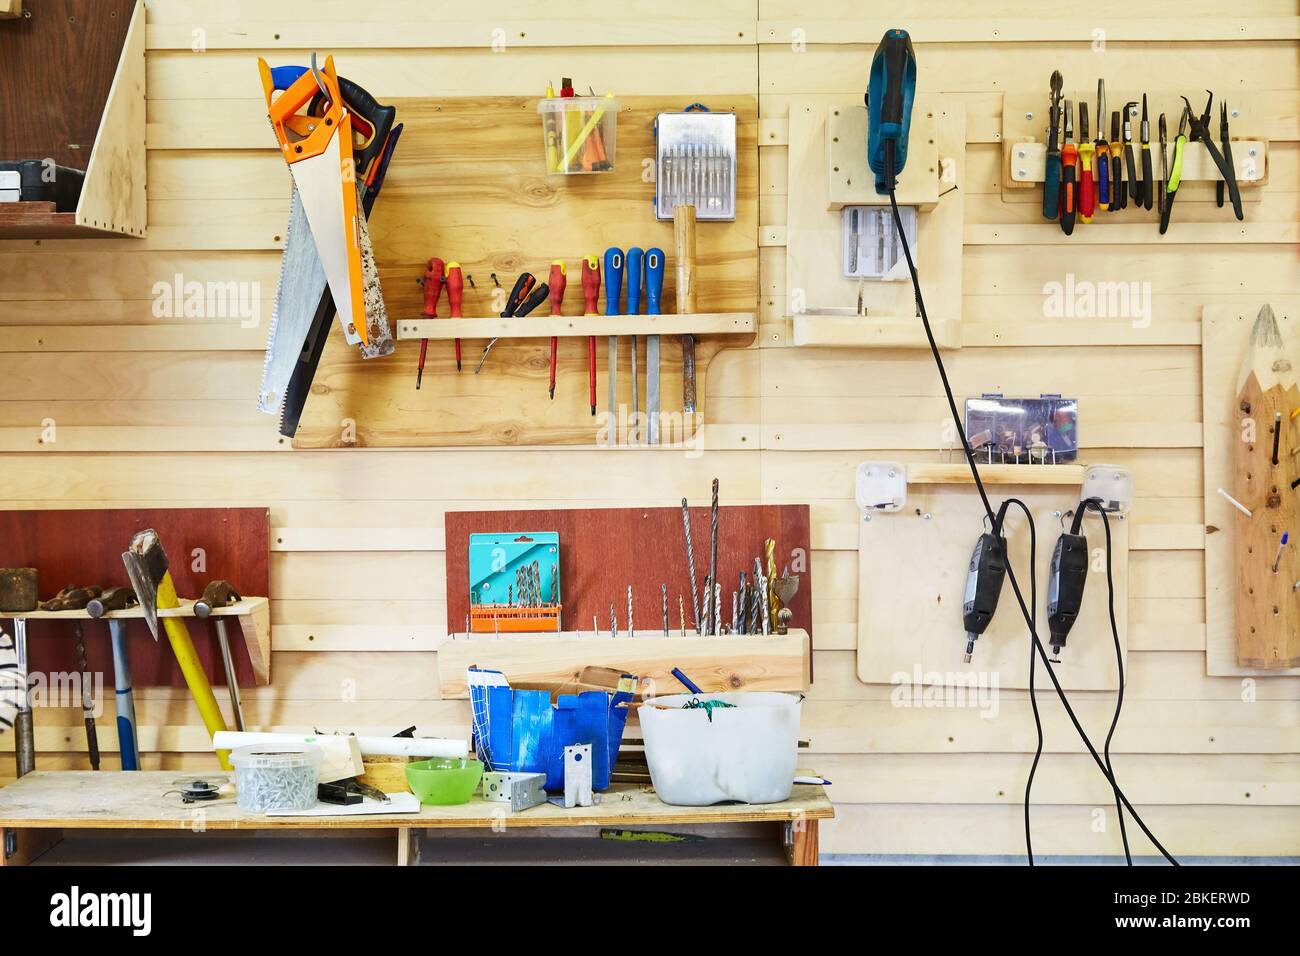 Werkzeuge hängen an der Wand in einer Schreinerei. Sägen, Schraubendreher, Stichsägen, Hämmer, Bohrer, etc. Werkstatt-Szene Stockfoto